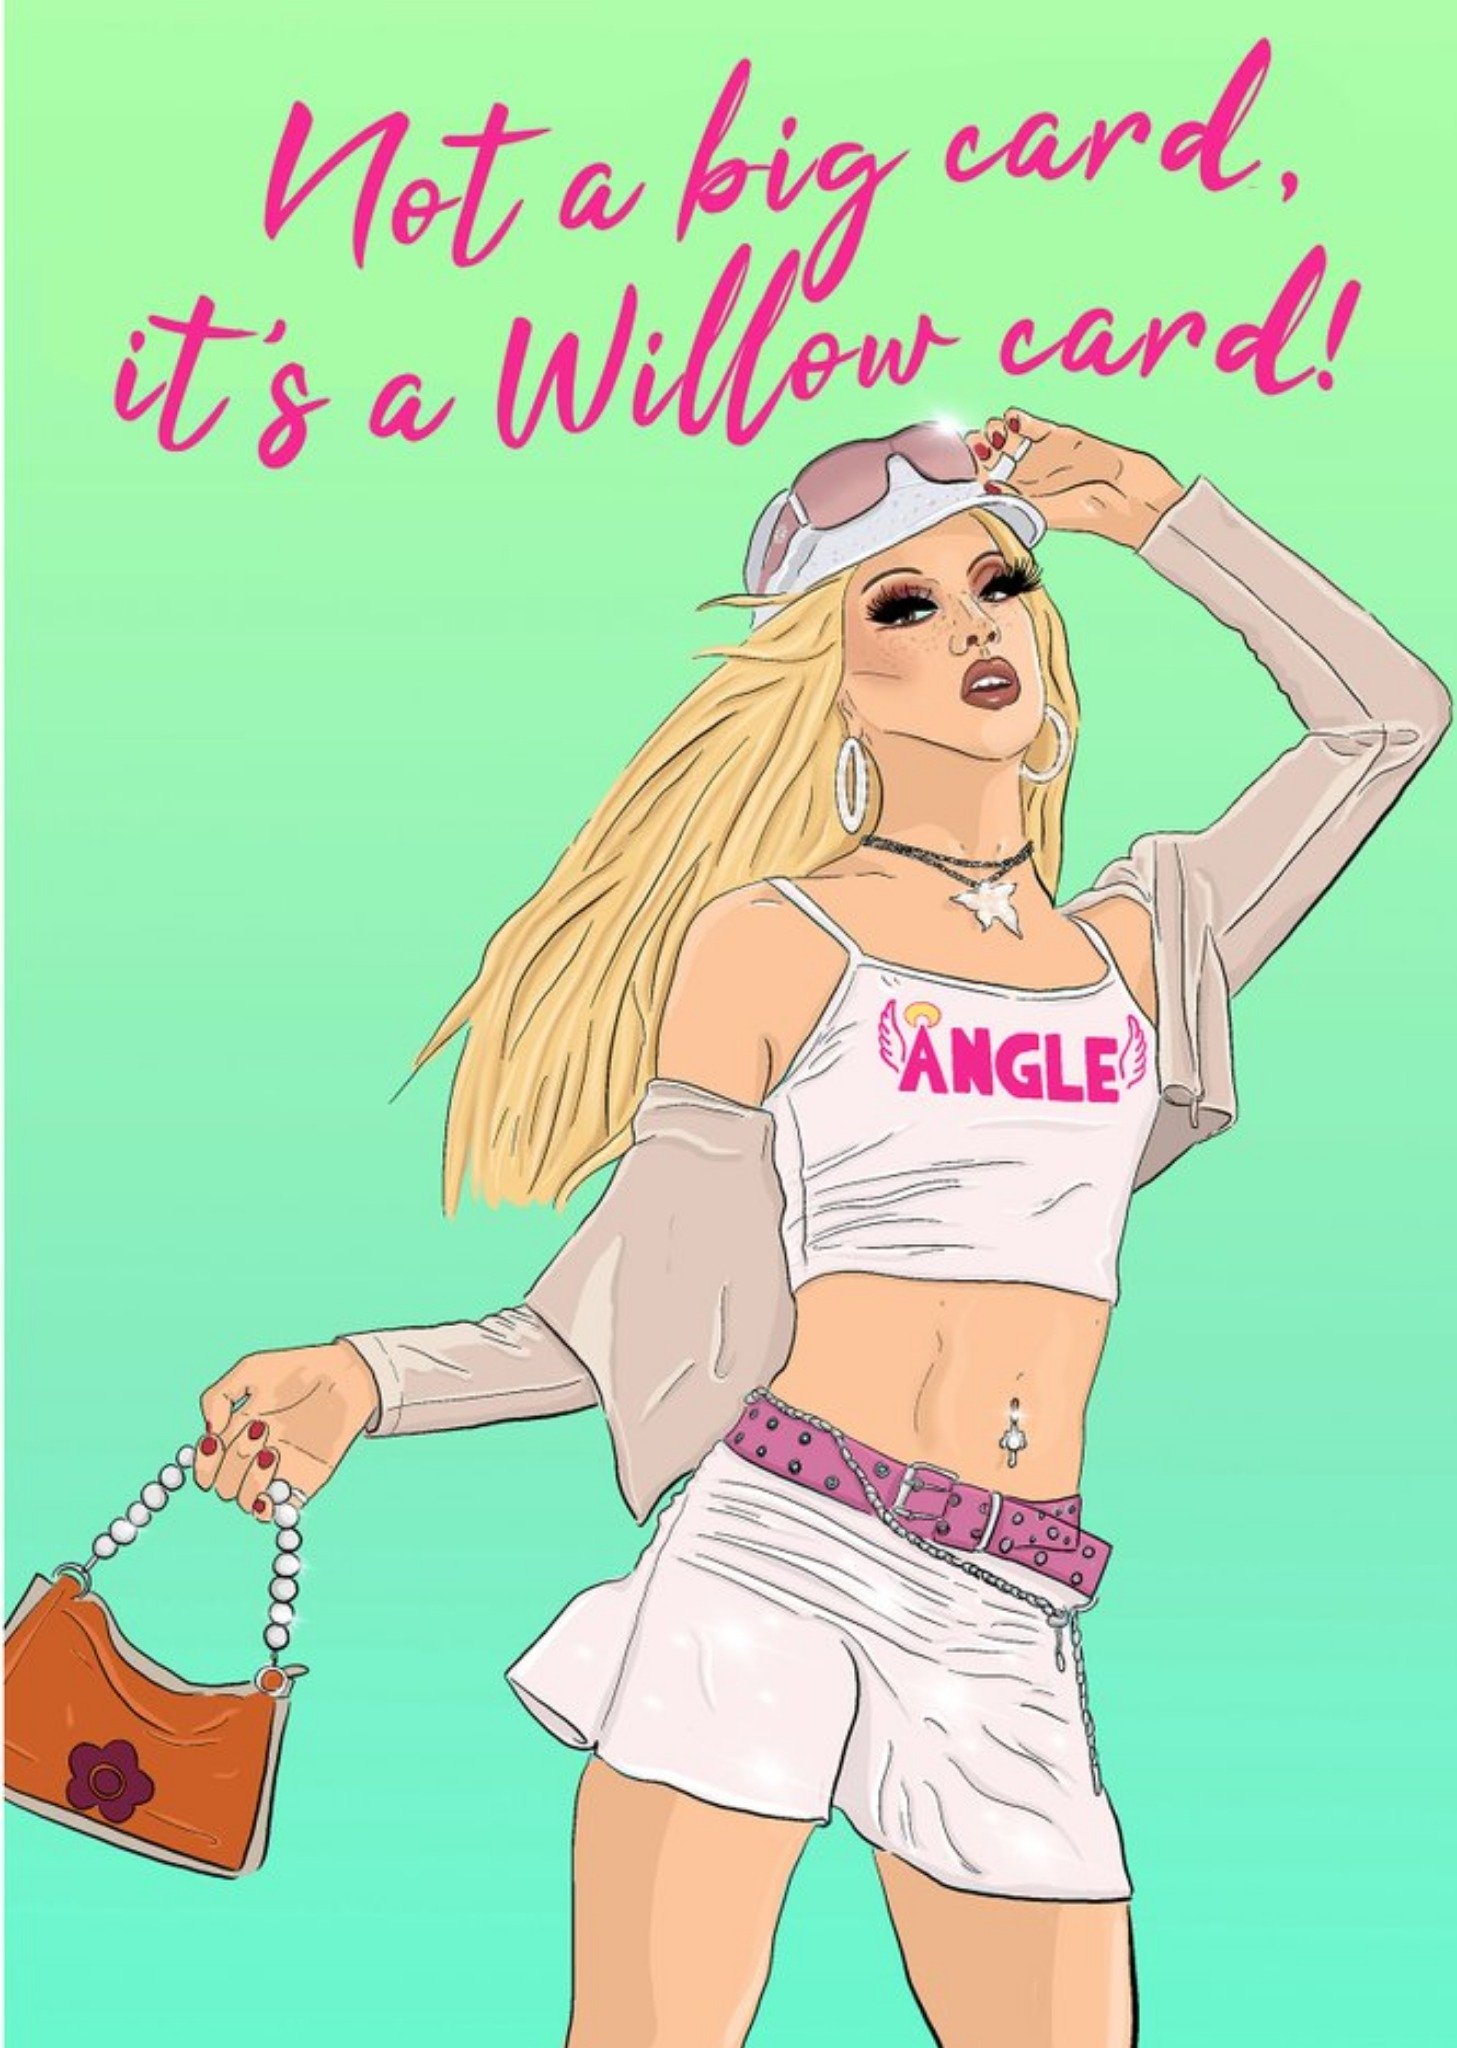 Moonpig Illustrated Drag Queen Not A Big Card Card Ecard